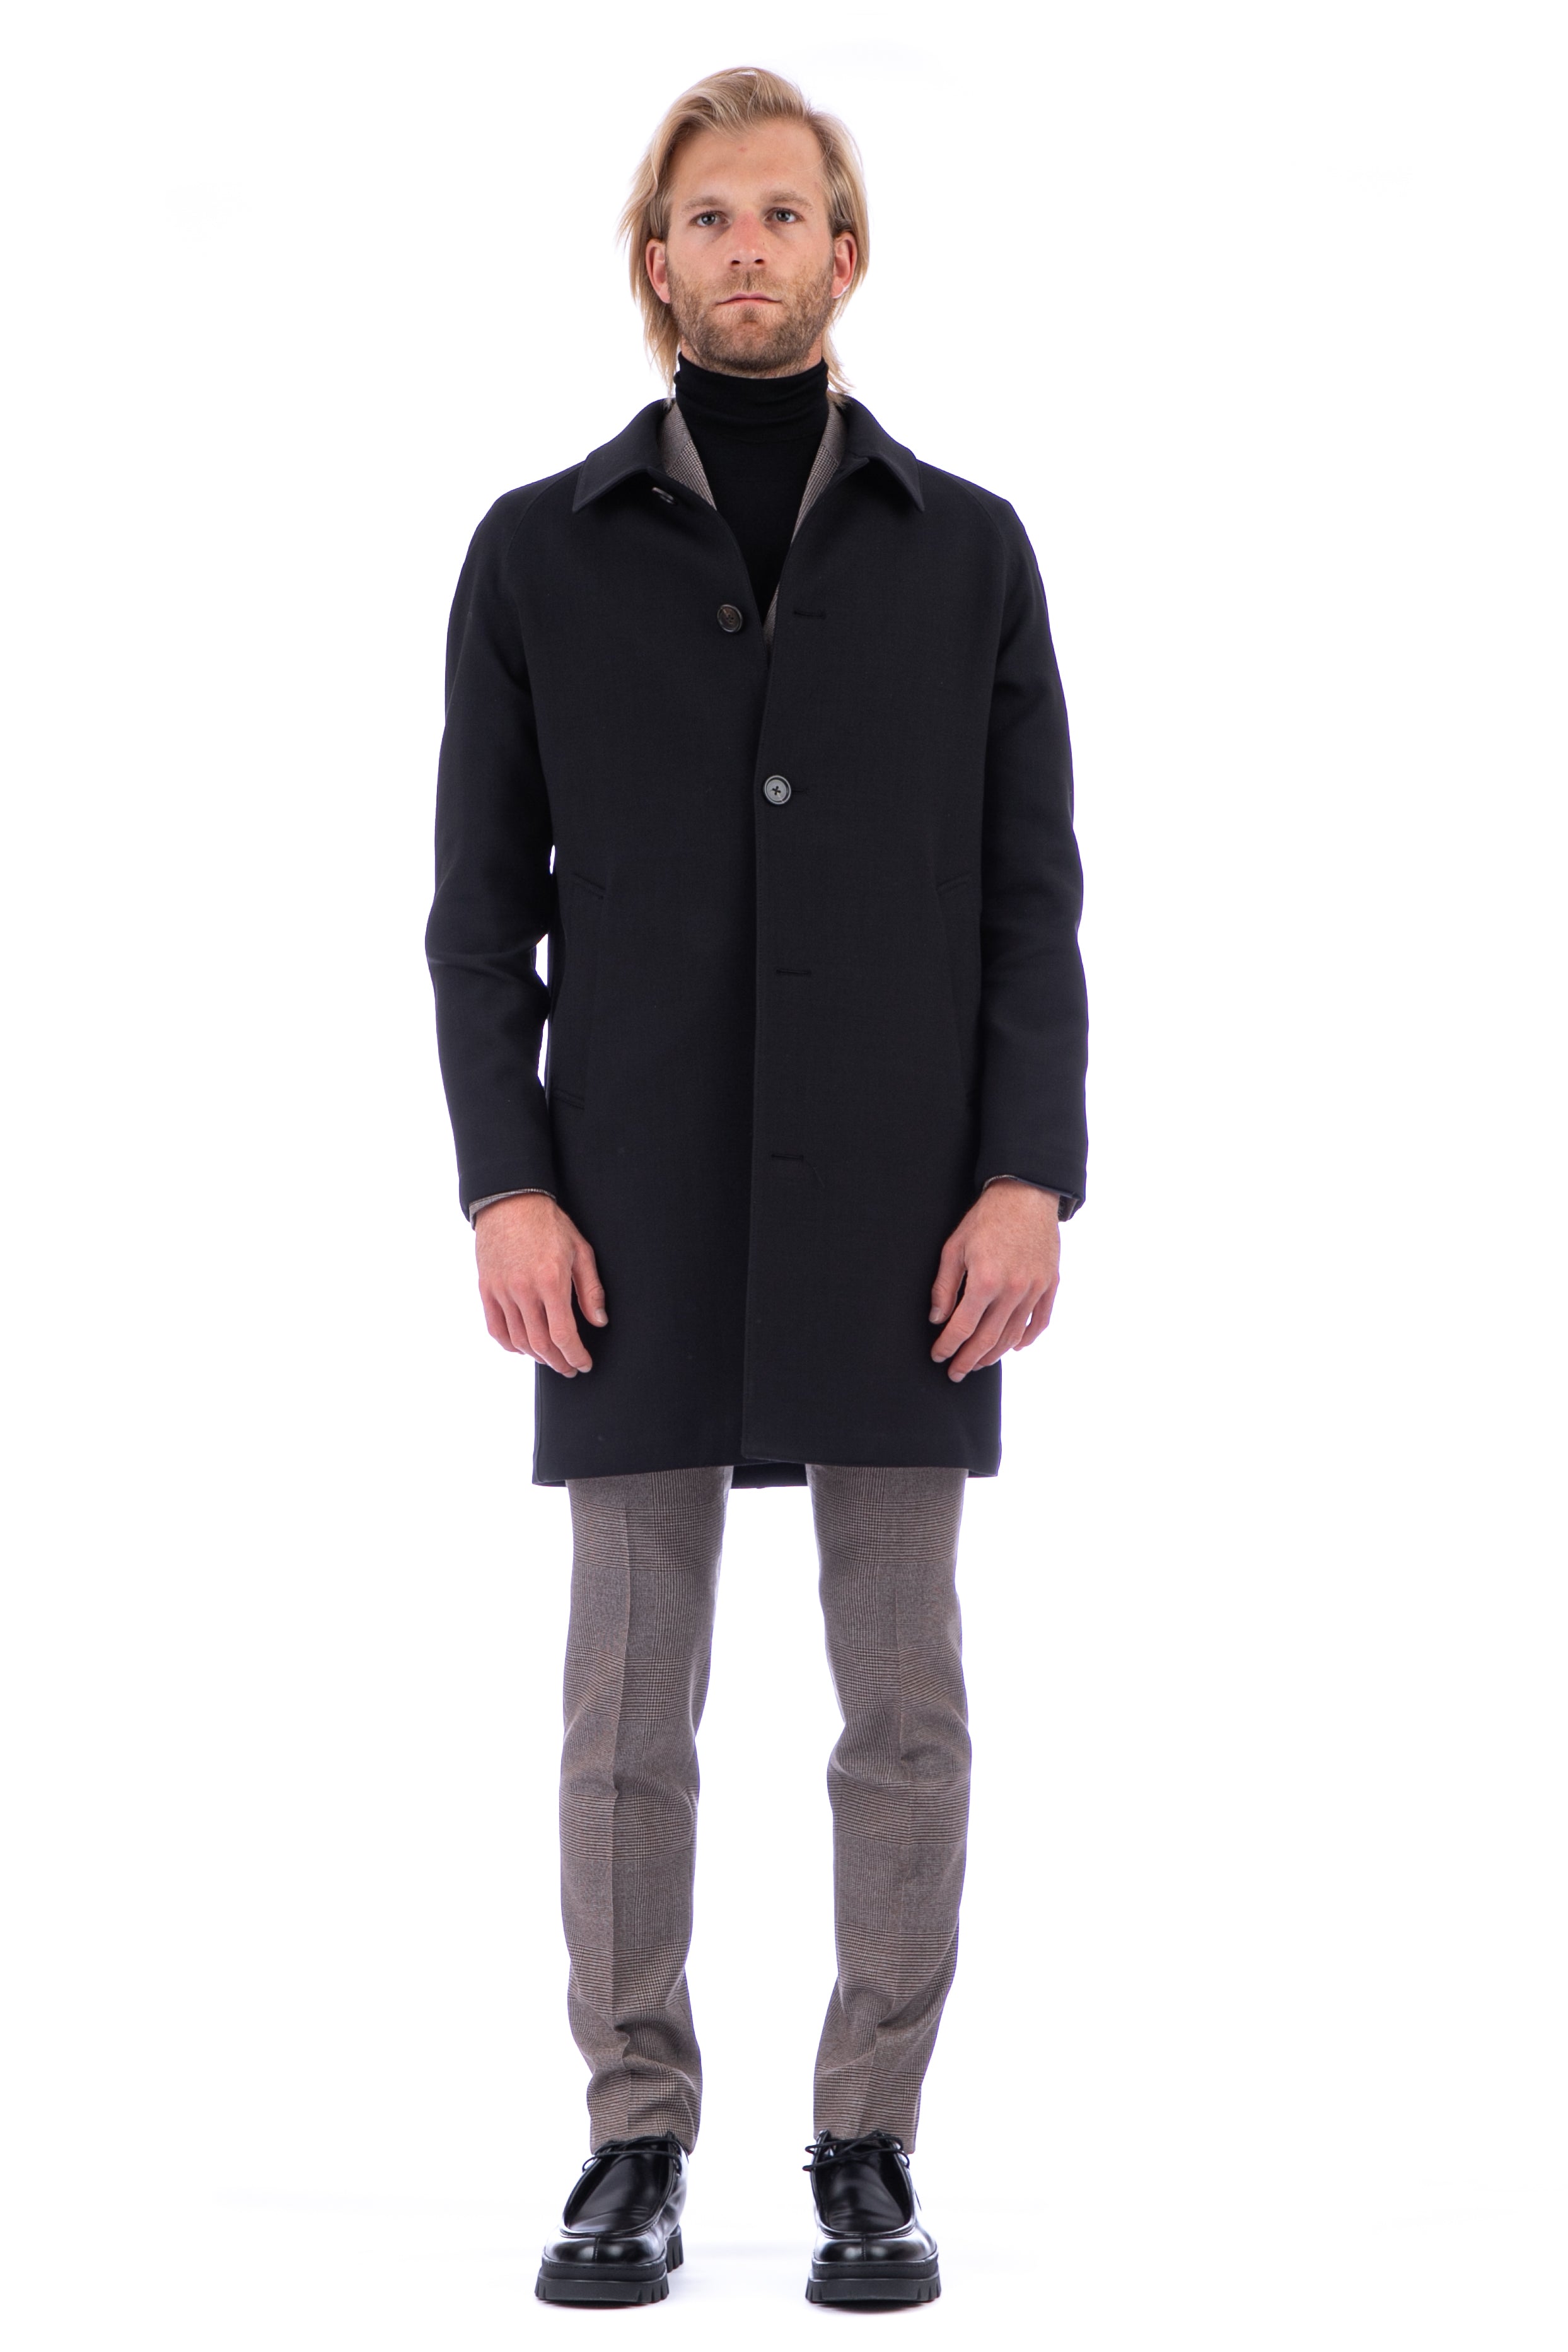 Easywear coat in bi-stretch technical wool